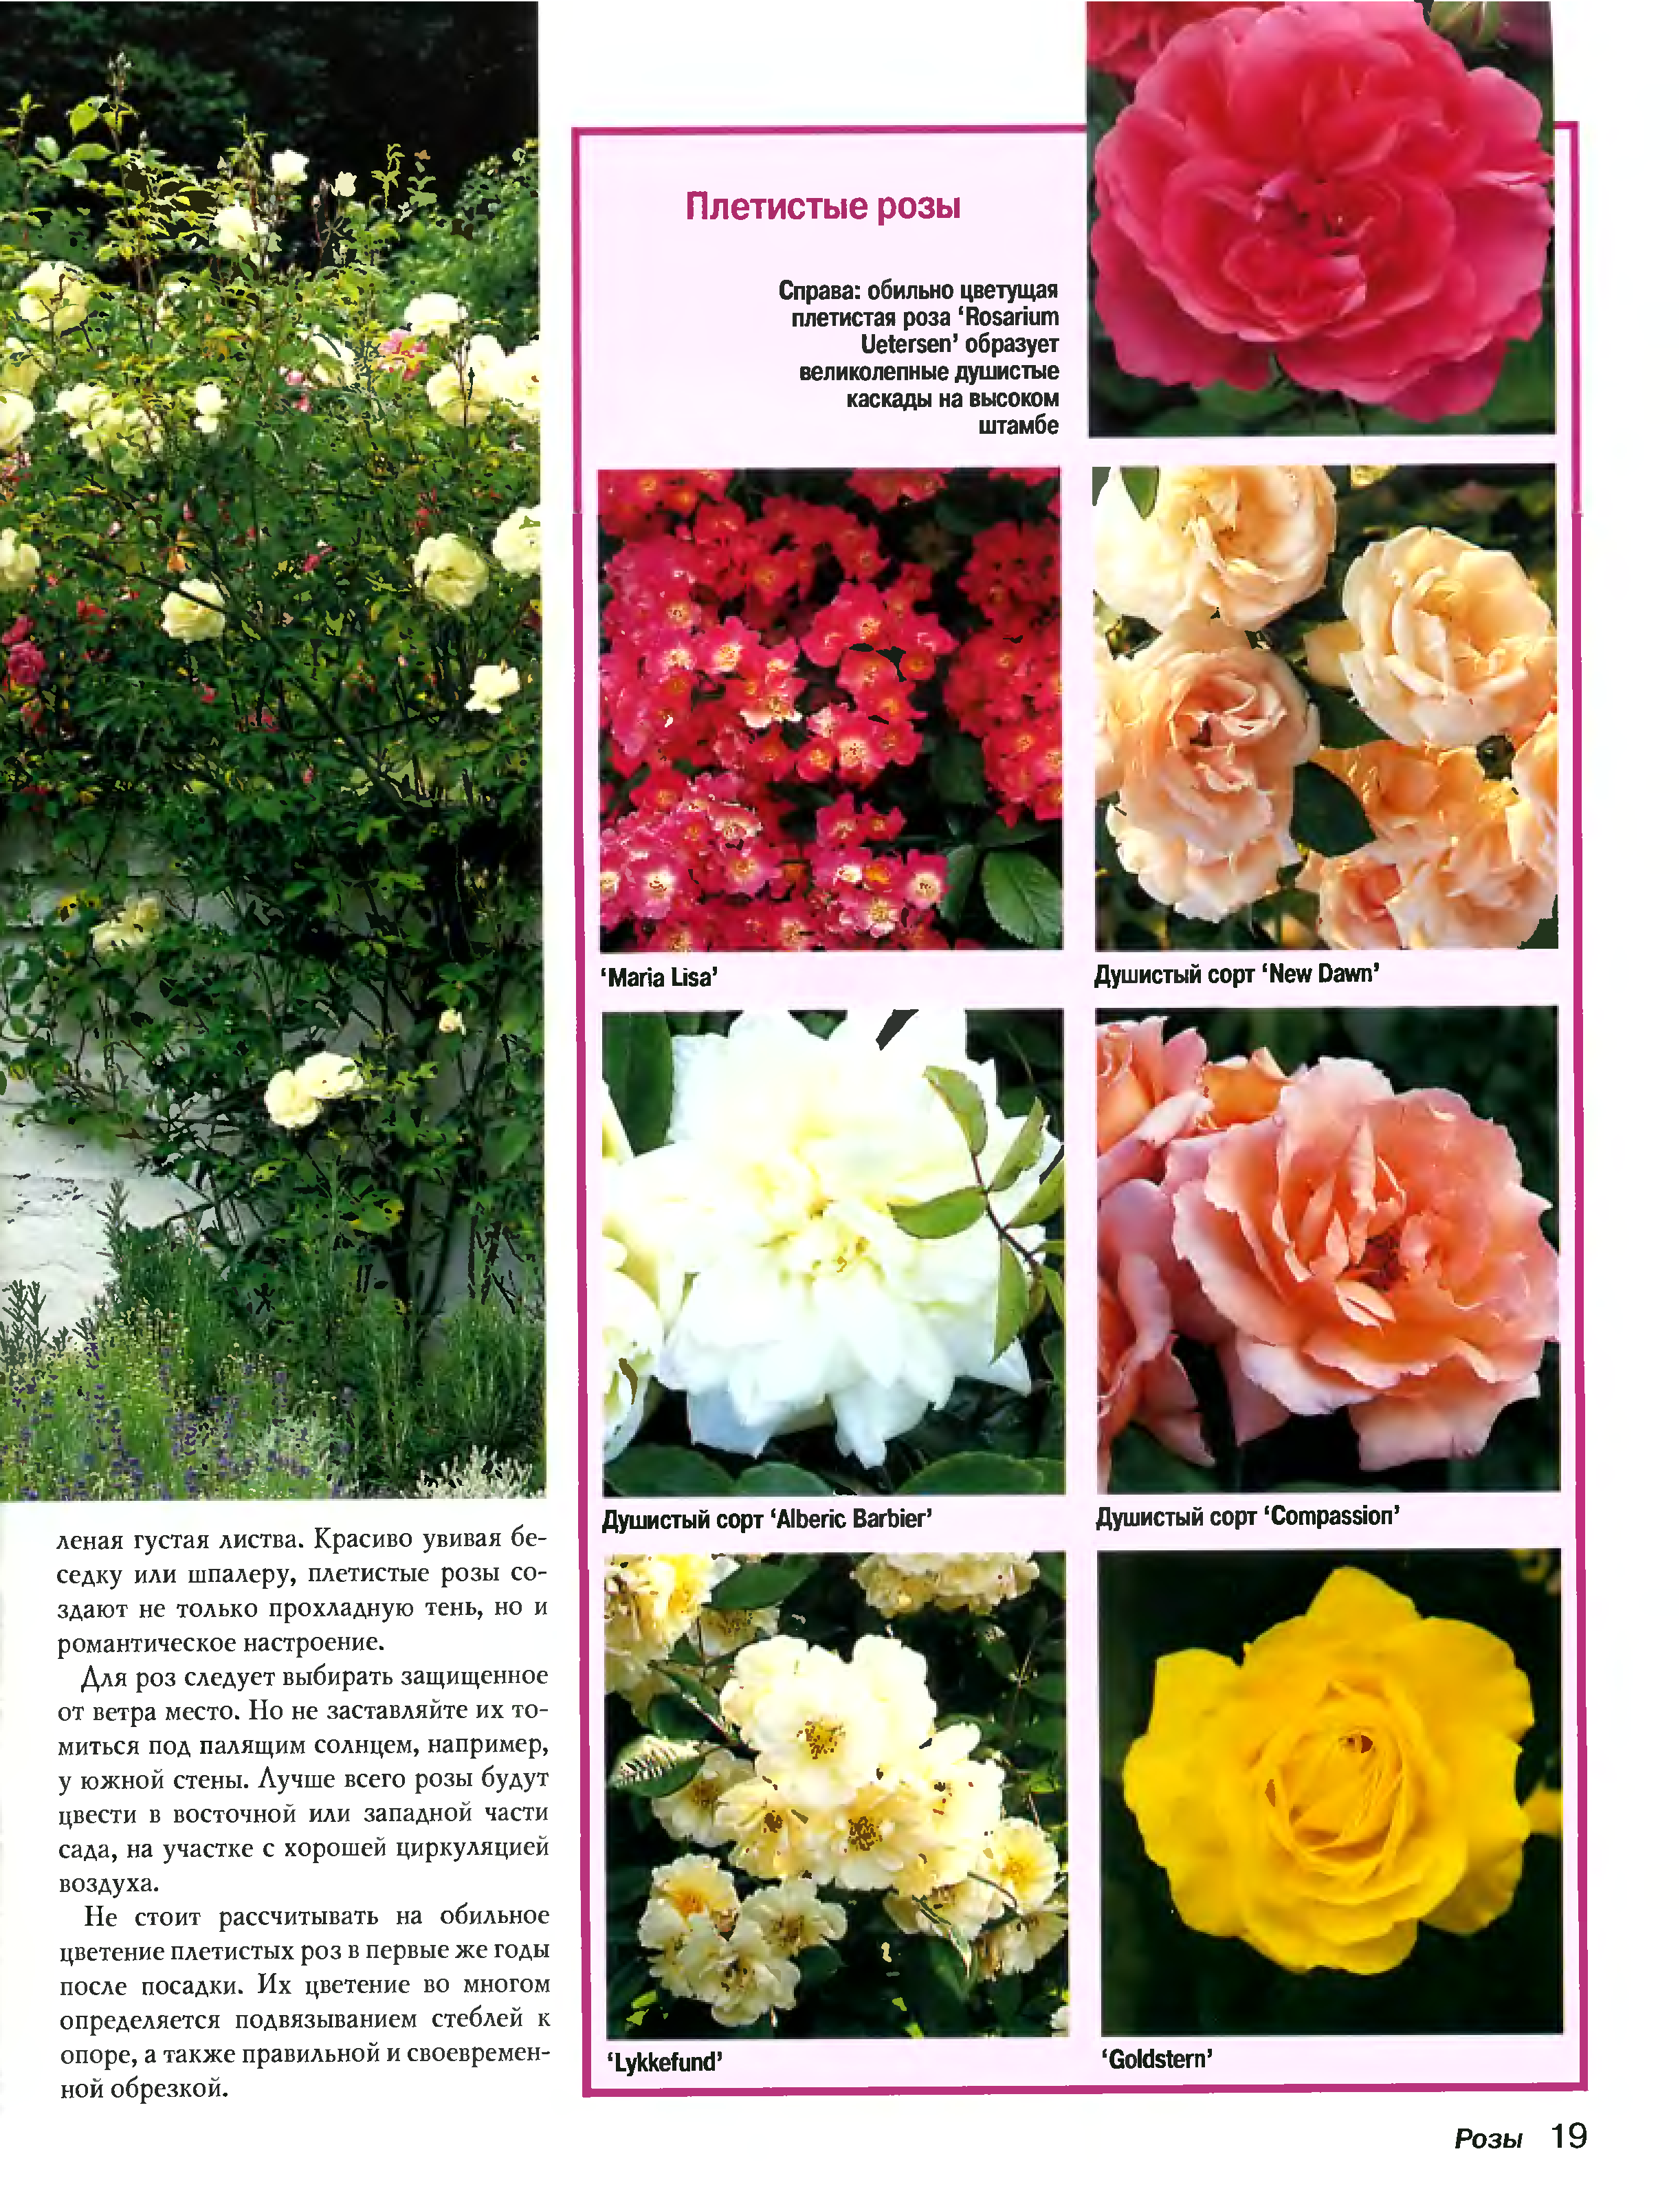 Плетистая роза флорентина, фото и описание